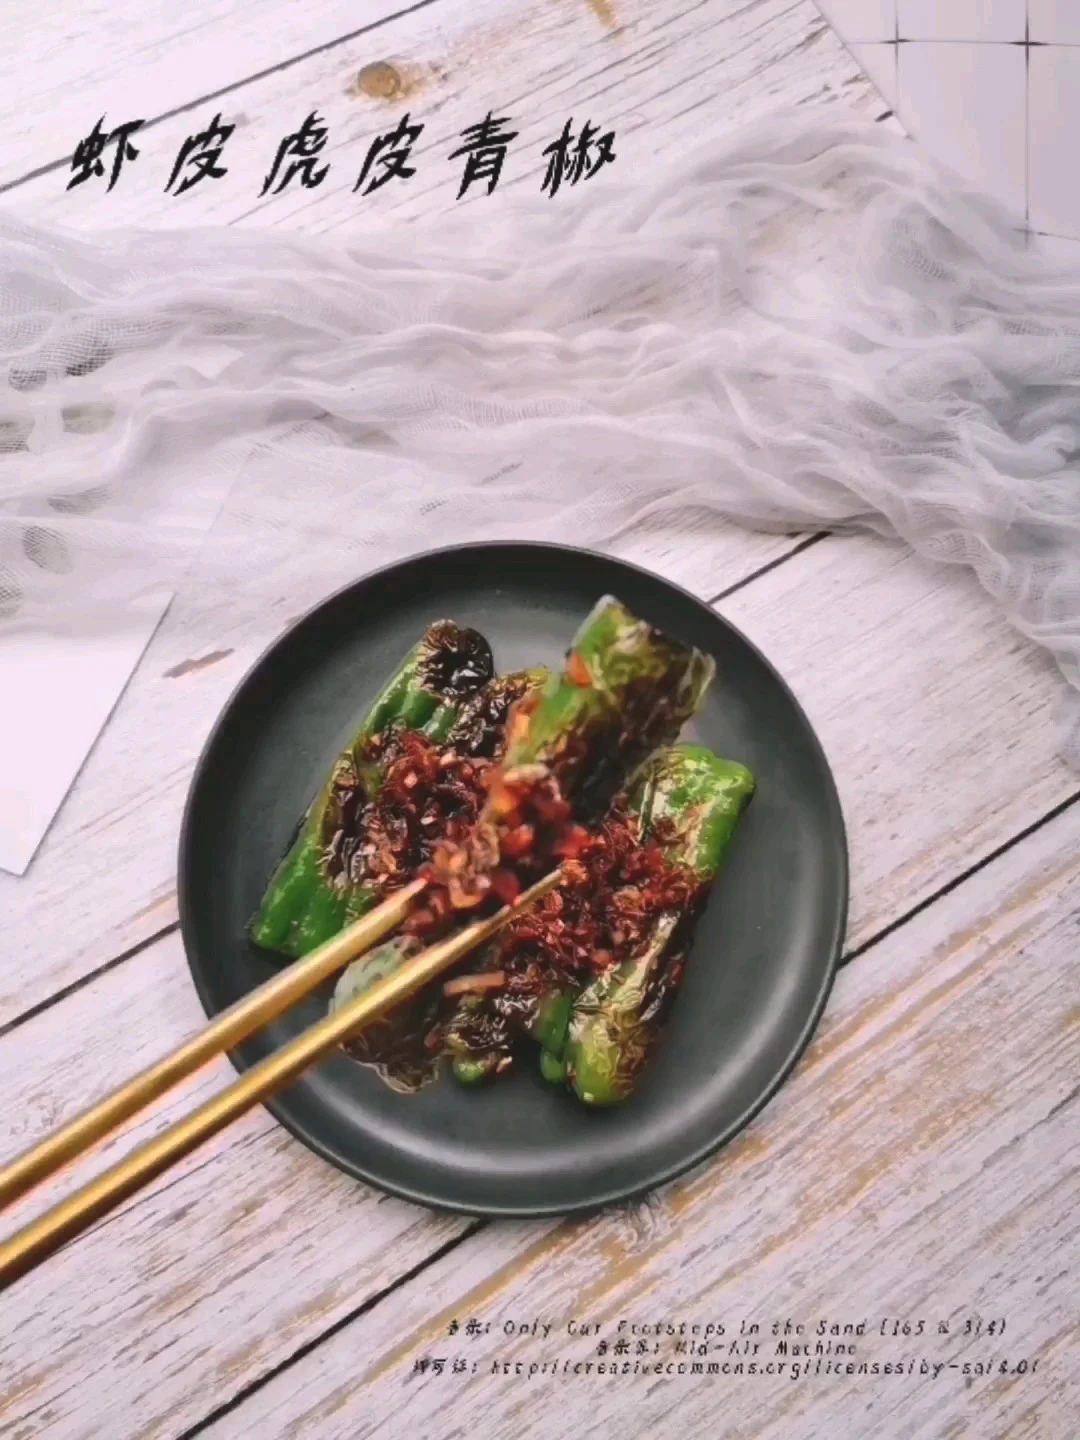 虾皮虎皮青椒的做法-咸鲜味煎菜谱